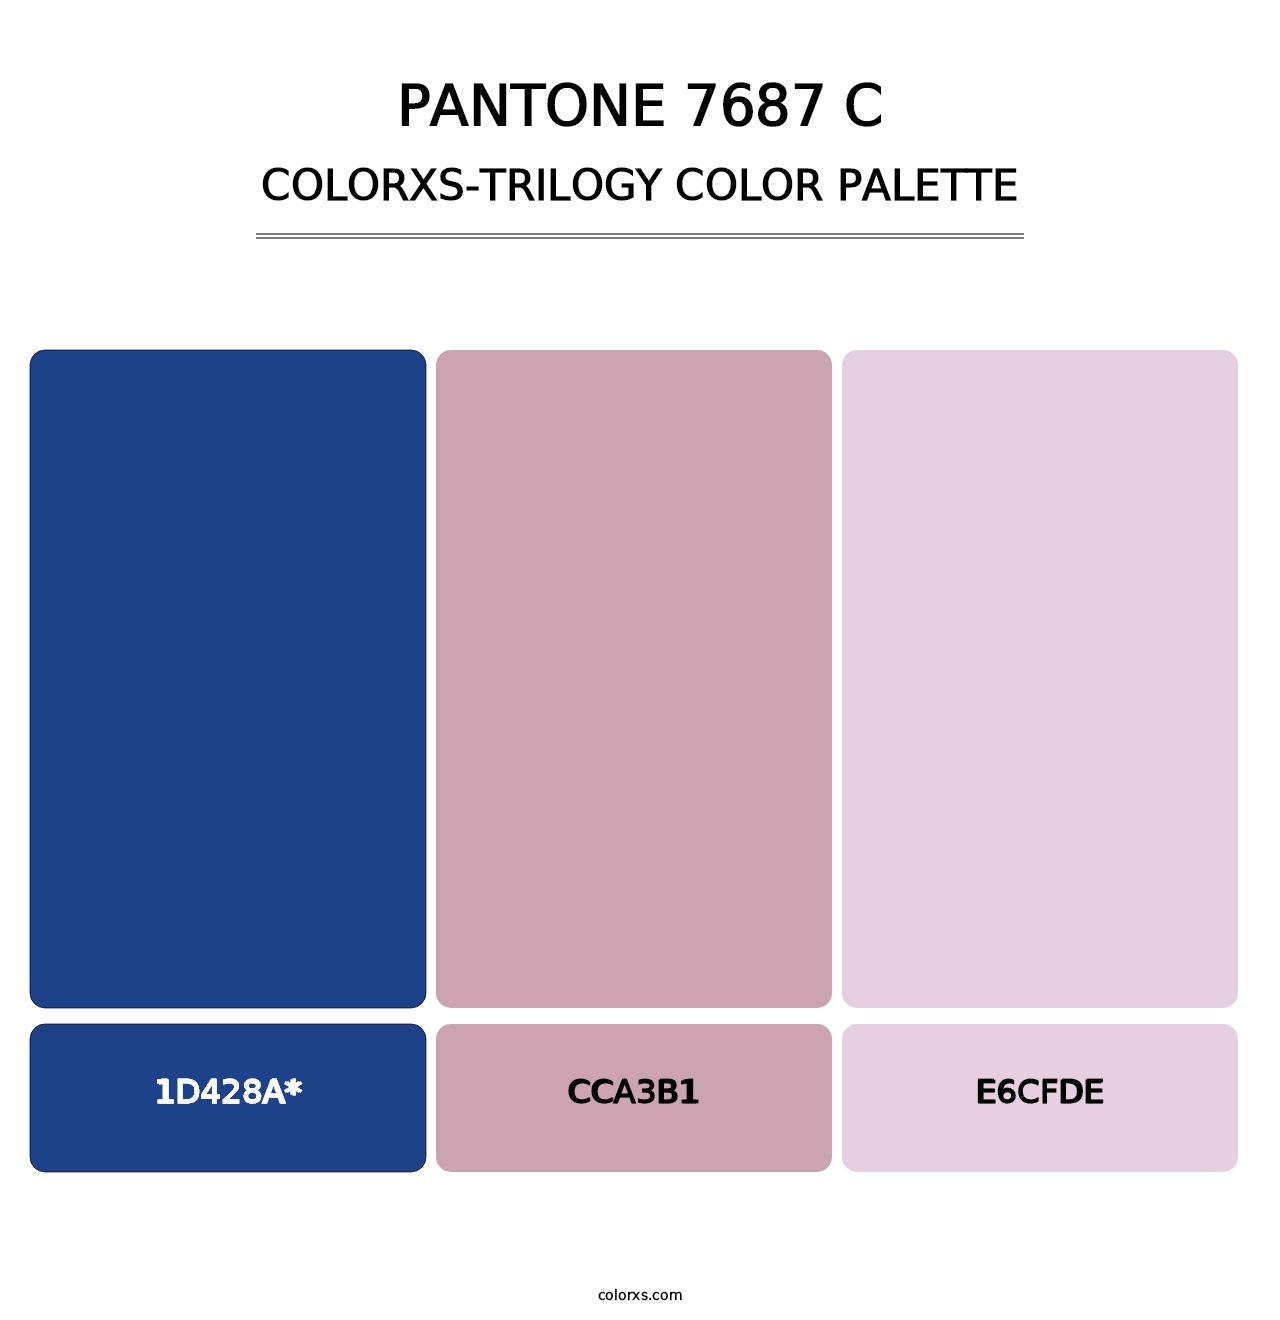 PANTONE 7687 C - Colorxs Trilogy Palette